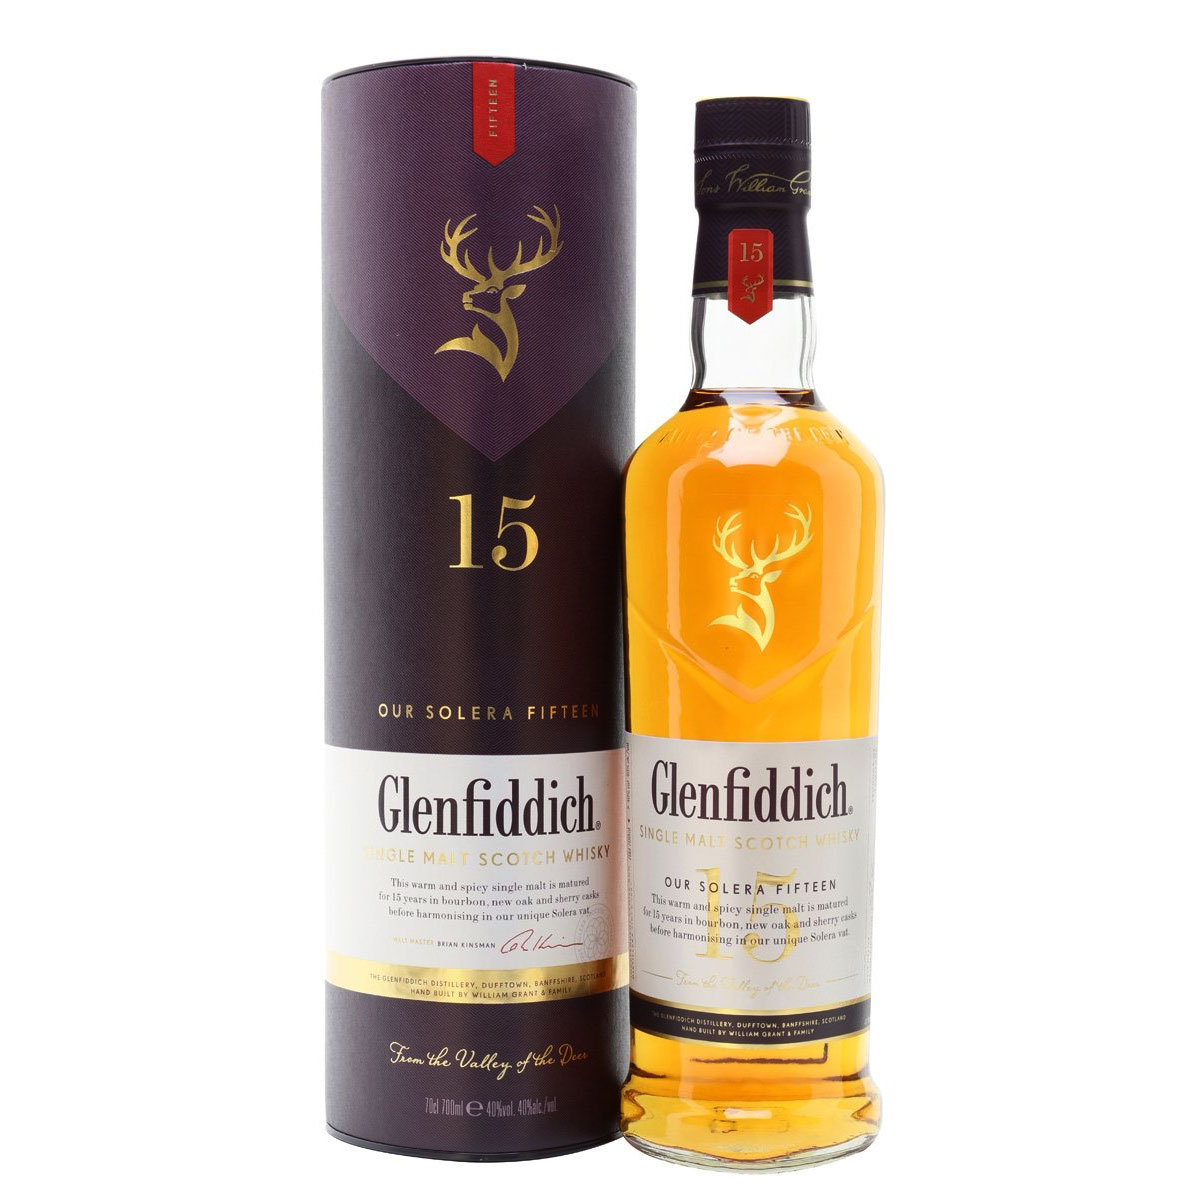 a bottle of glenfiddich 15 yea old single malt scotch whisky